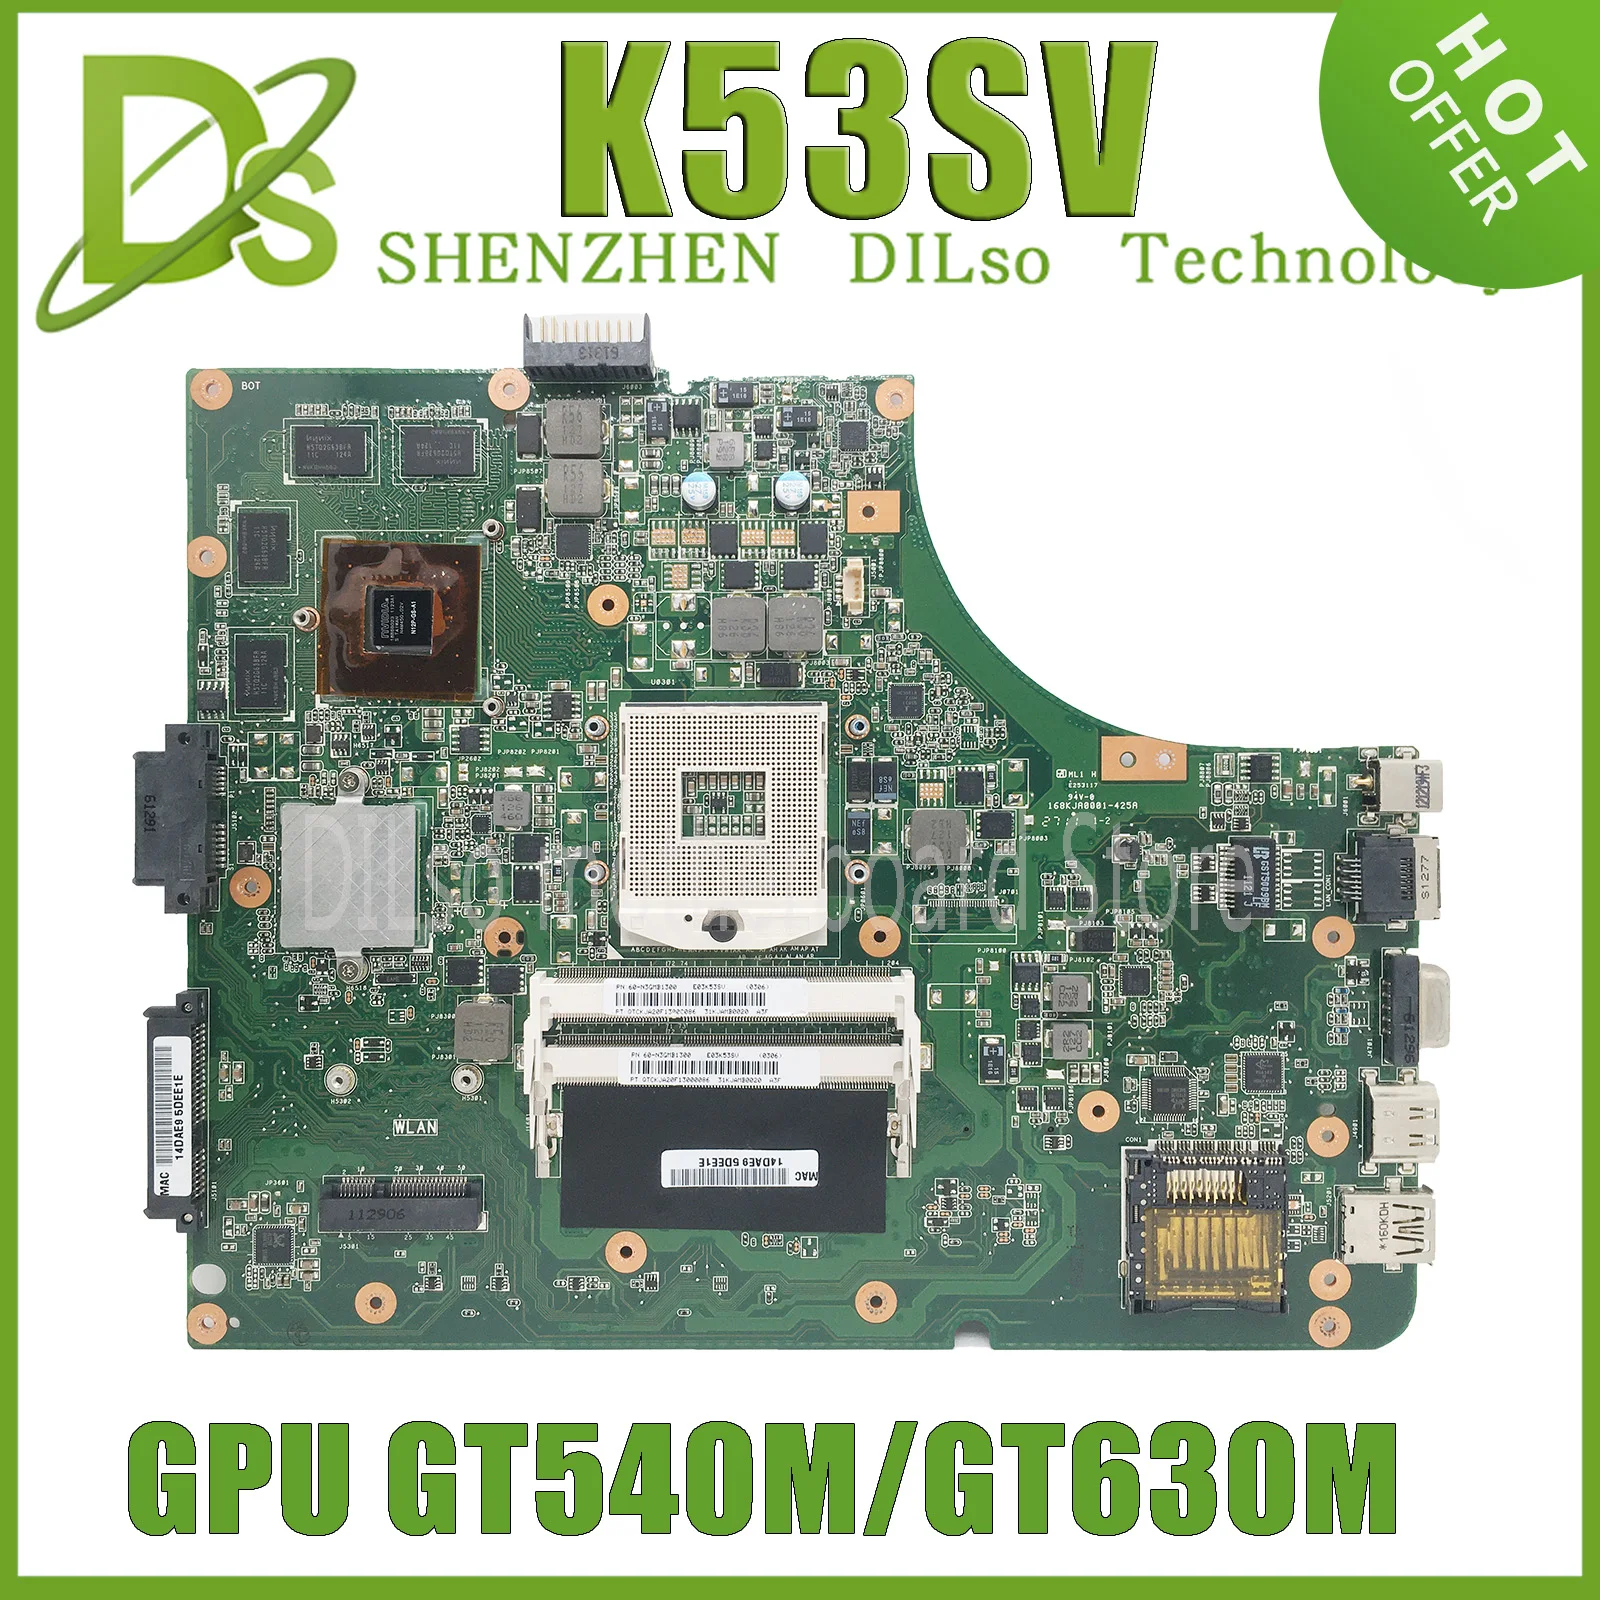 Enlarge KEFU K53SV Mainboard For ASUS K53SM K53S A53S X53S P53S K53SJ K53SC Laptop Motherboard GT630M/GT540M/GT520M-1G/2G 100% Working